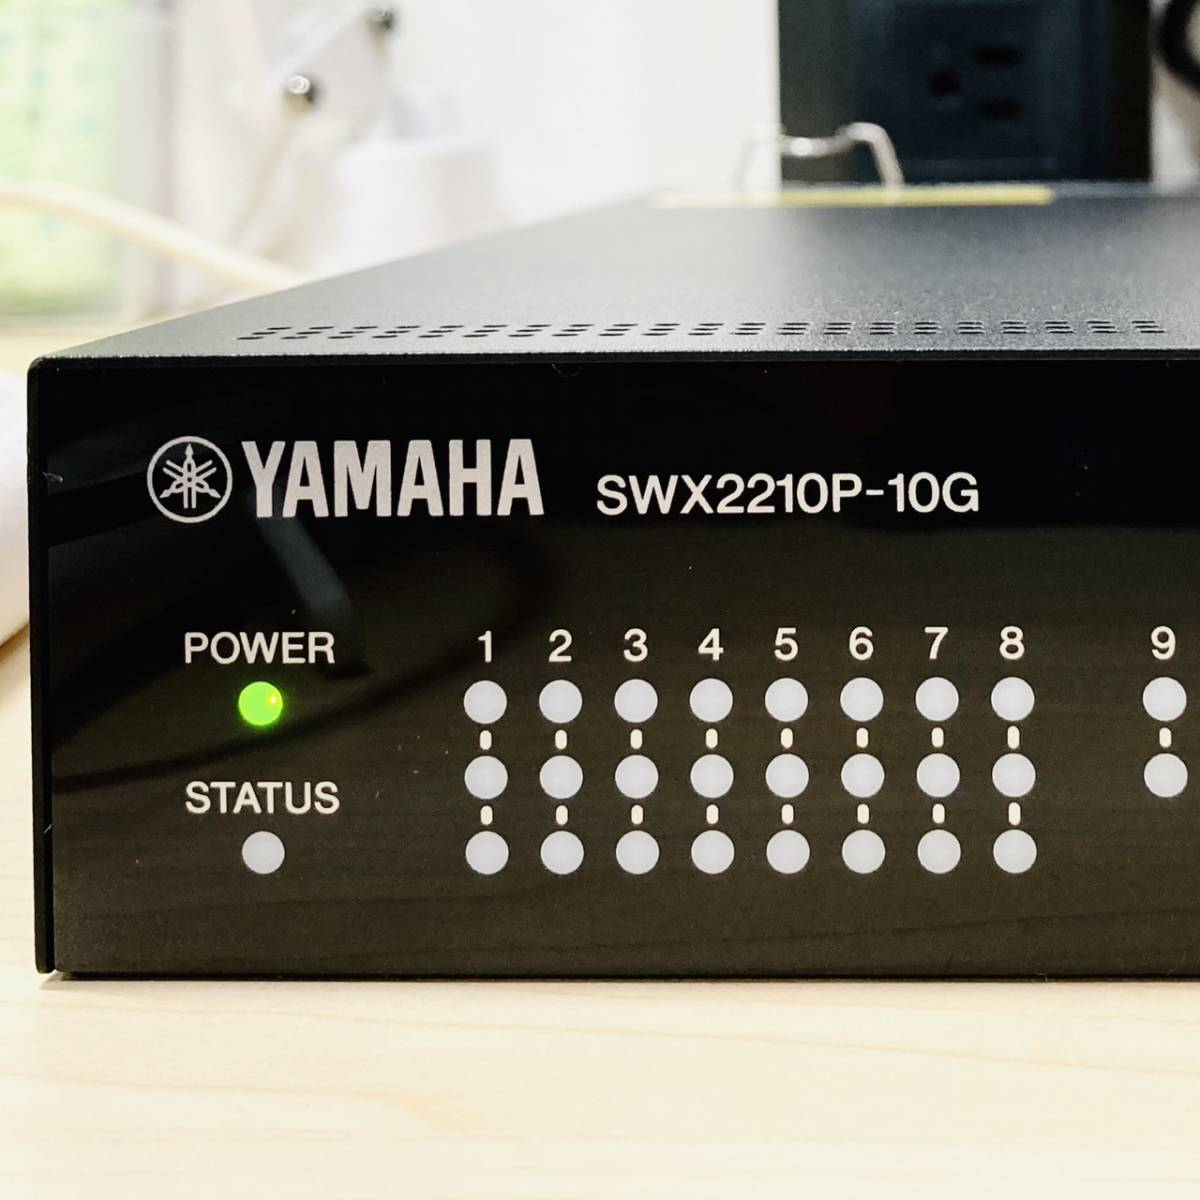 437【通電OK】YAMAHA SWX2210P-10G スマートL2 PoE スイッチ switch 10ポート Web GUI VLAN LANマップ ネットワーク ヤマハ_画像2